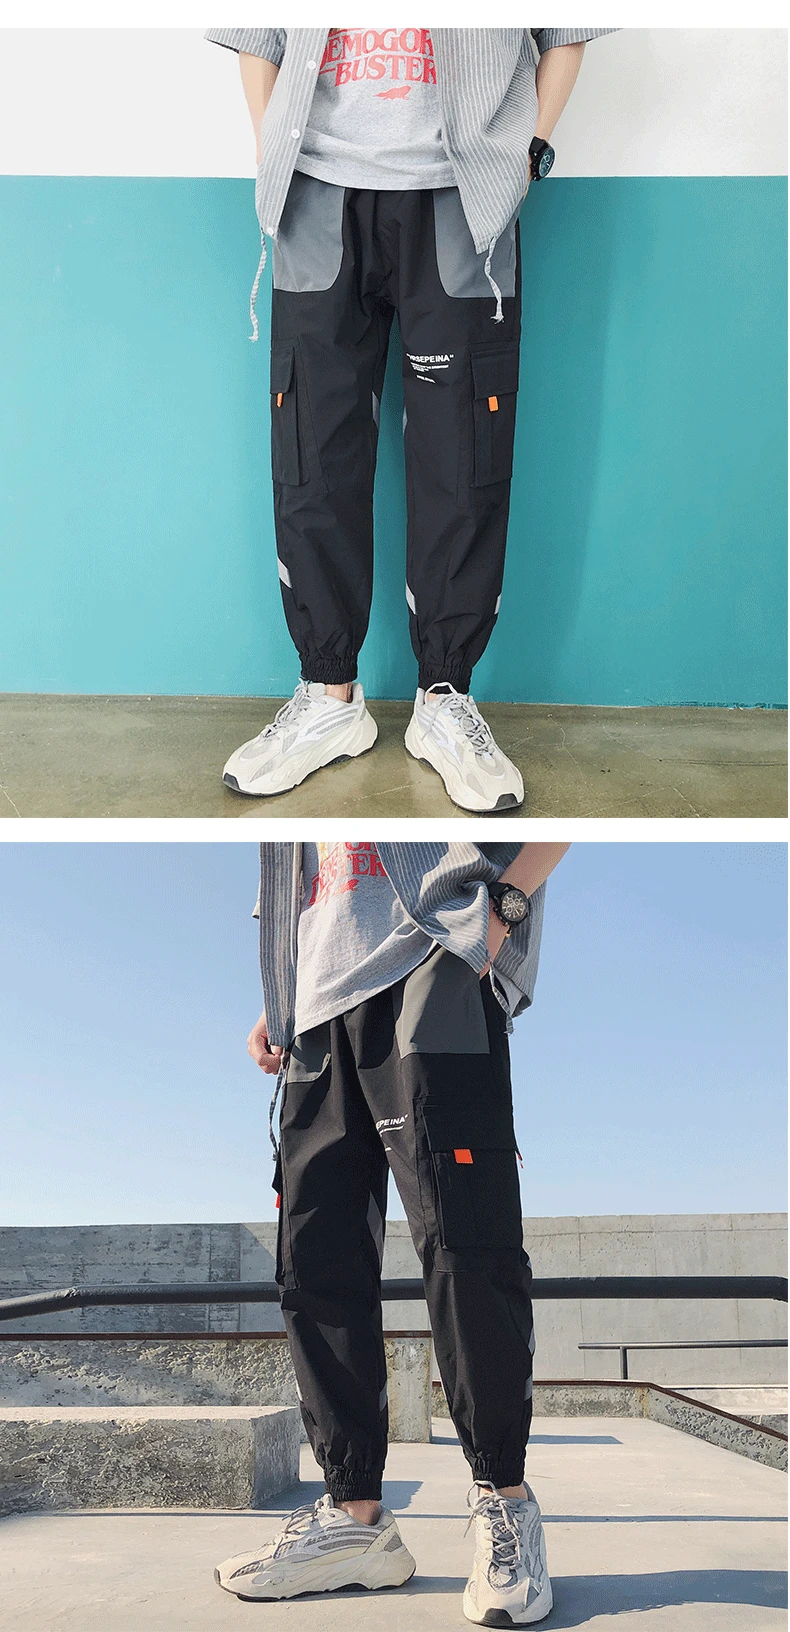 LAPPSTER цветные летние штаны для бега мужская Японская уличная одежда хип-хоп брюки карго черные спортивные брюки цвета хаки